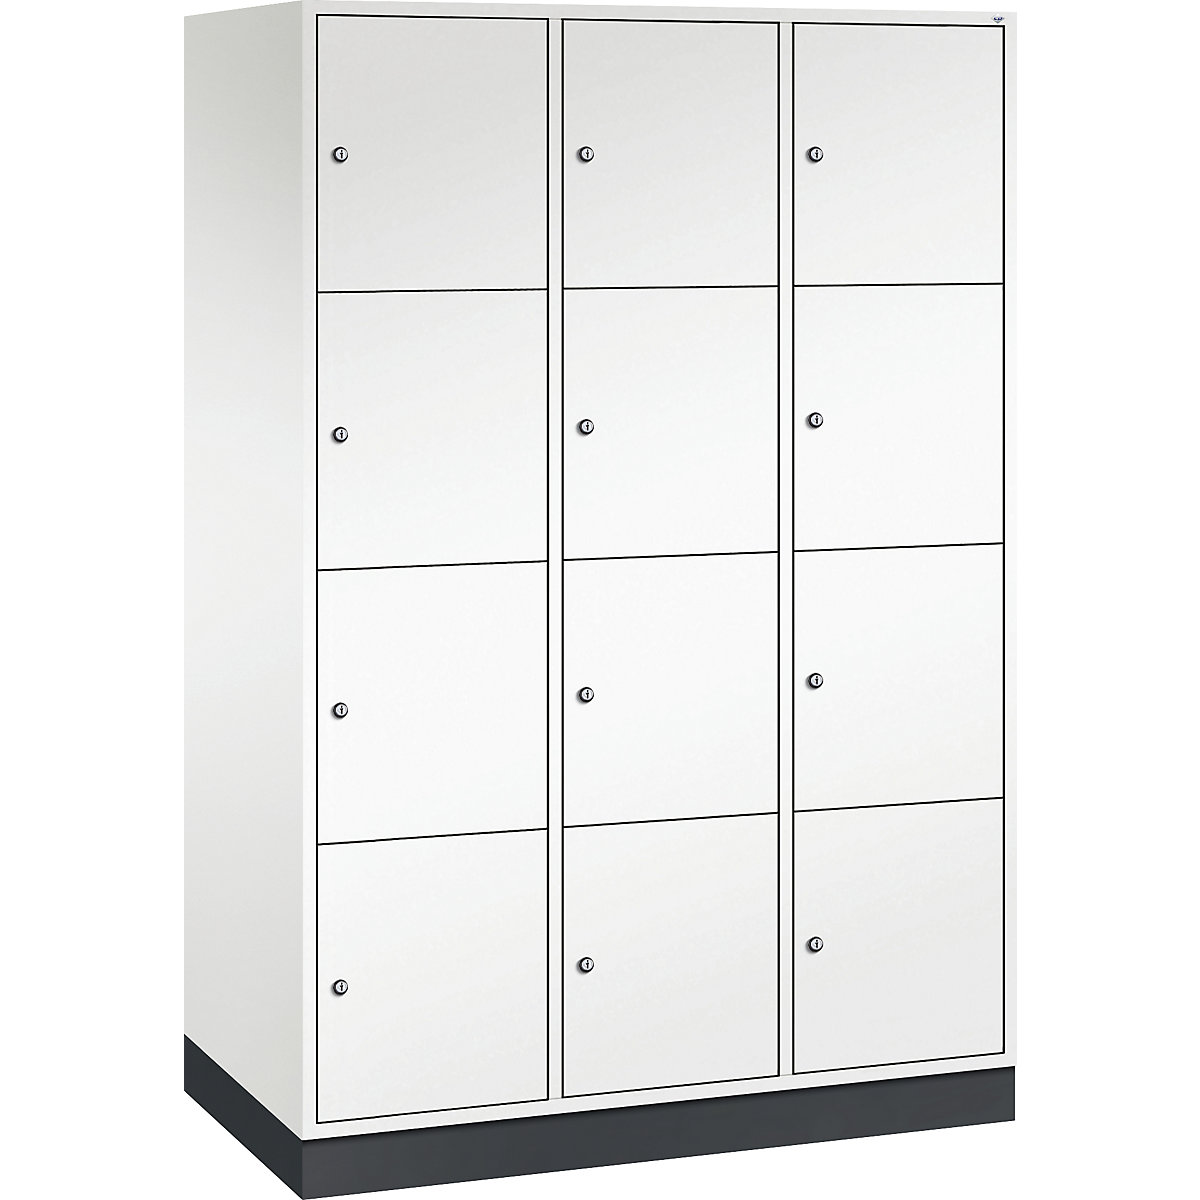 Vestiaire multicases en acier INTRO, casiers hauteur 435 mm – C+P, l x p 1220 x 600 mm, 12 casiers, corps blanc pur, portes blanc pur-6